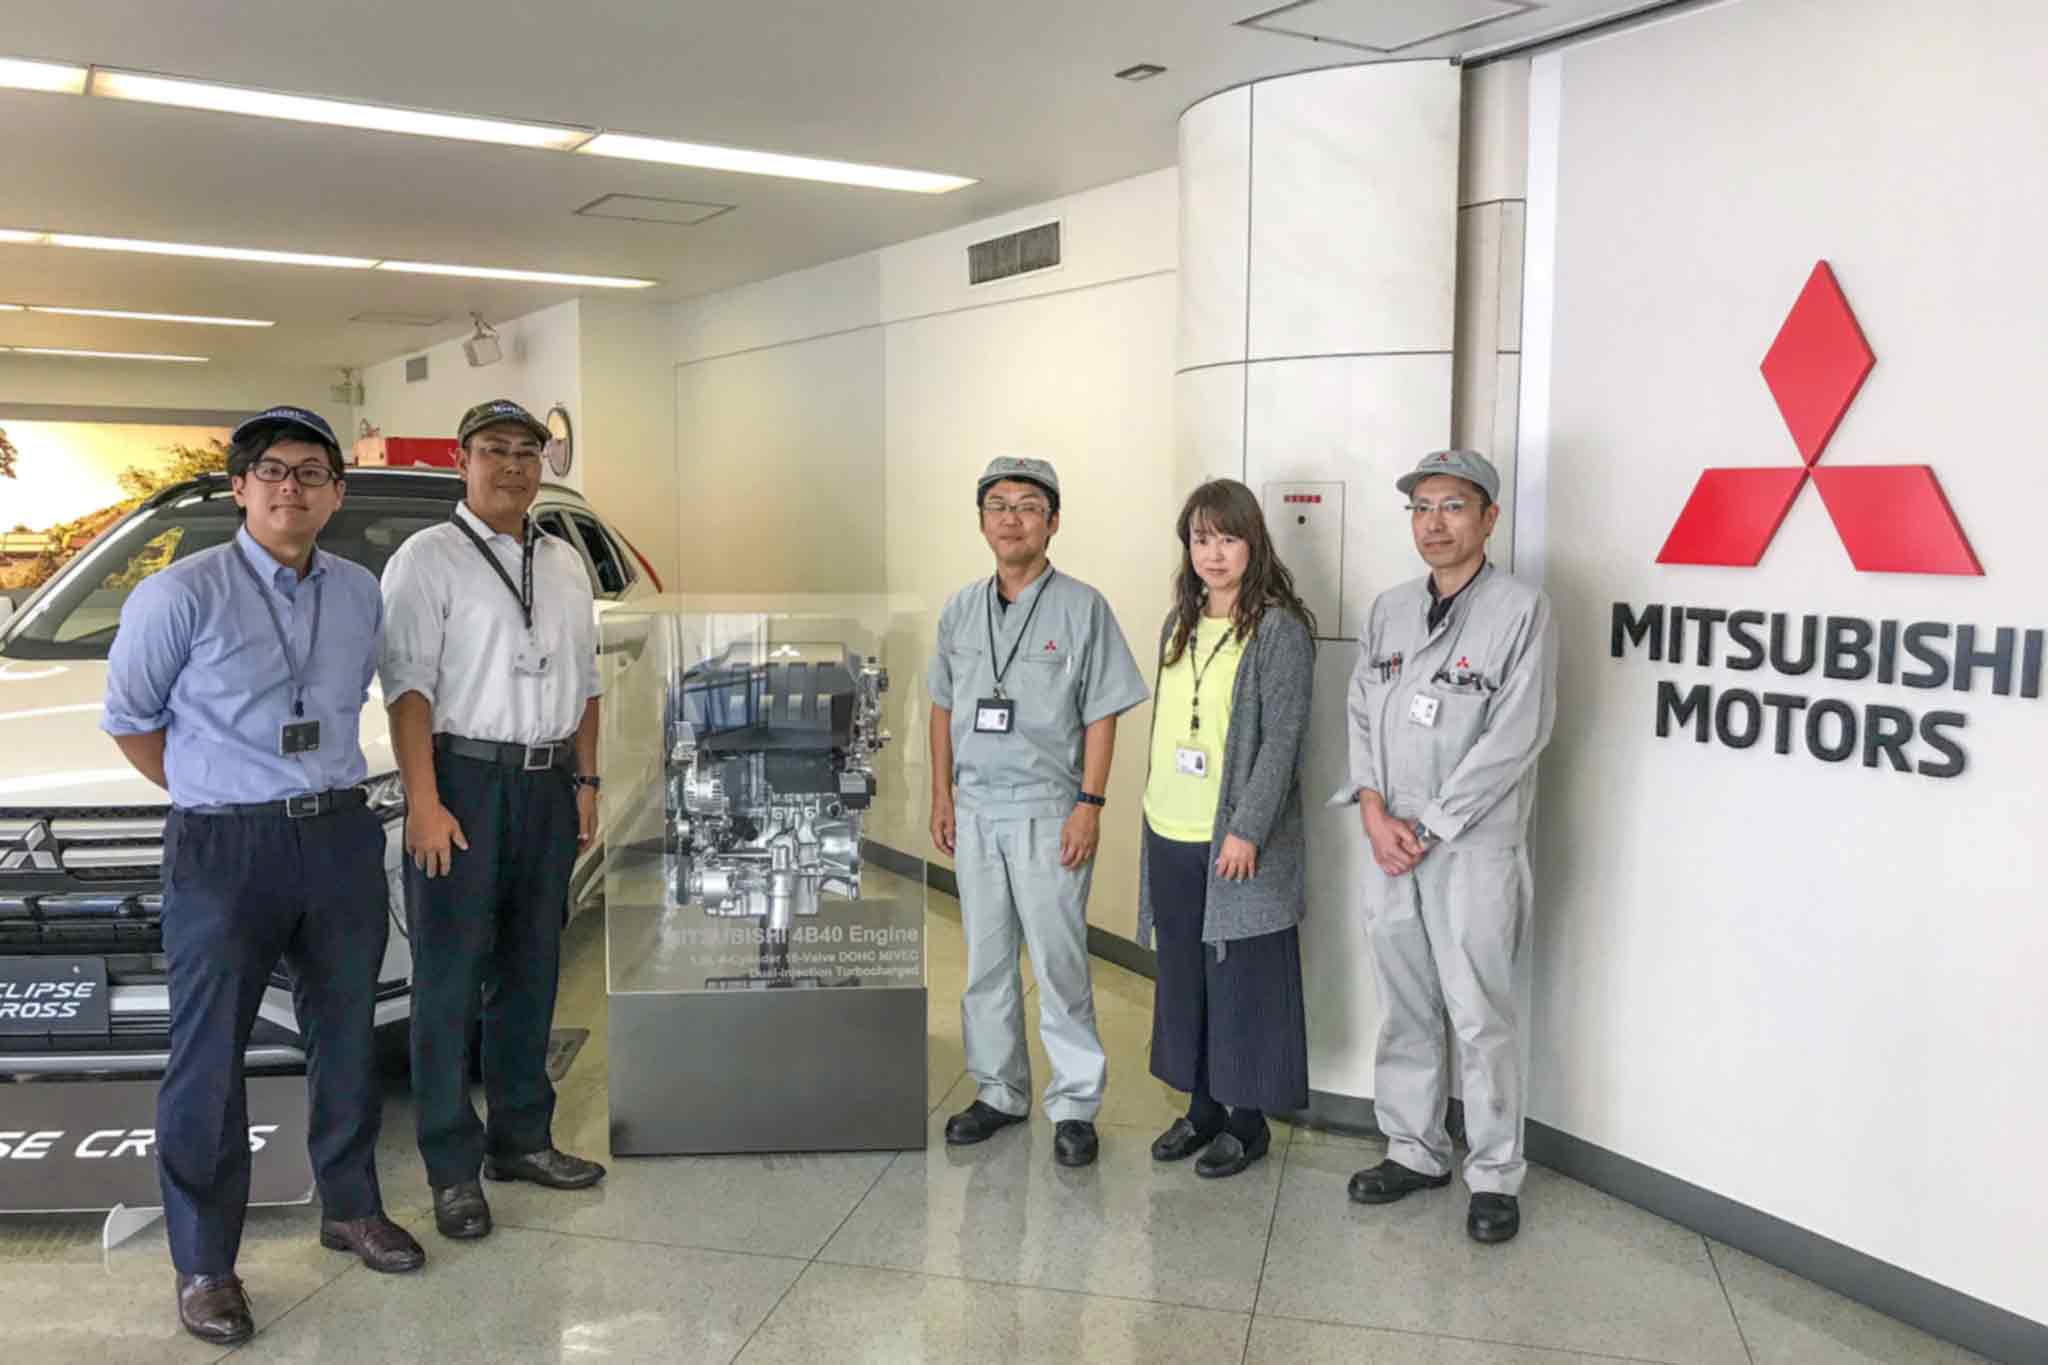 Rechts das Mitsubishi Motors Logo. Links davon sind 5 Personen um einen Motor platziert. Im Hintergrund steht ein Auto.